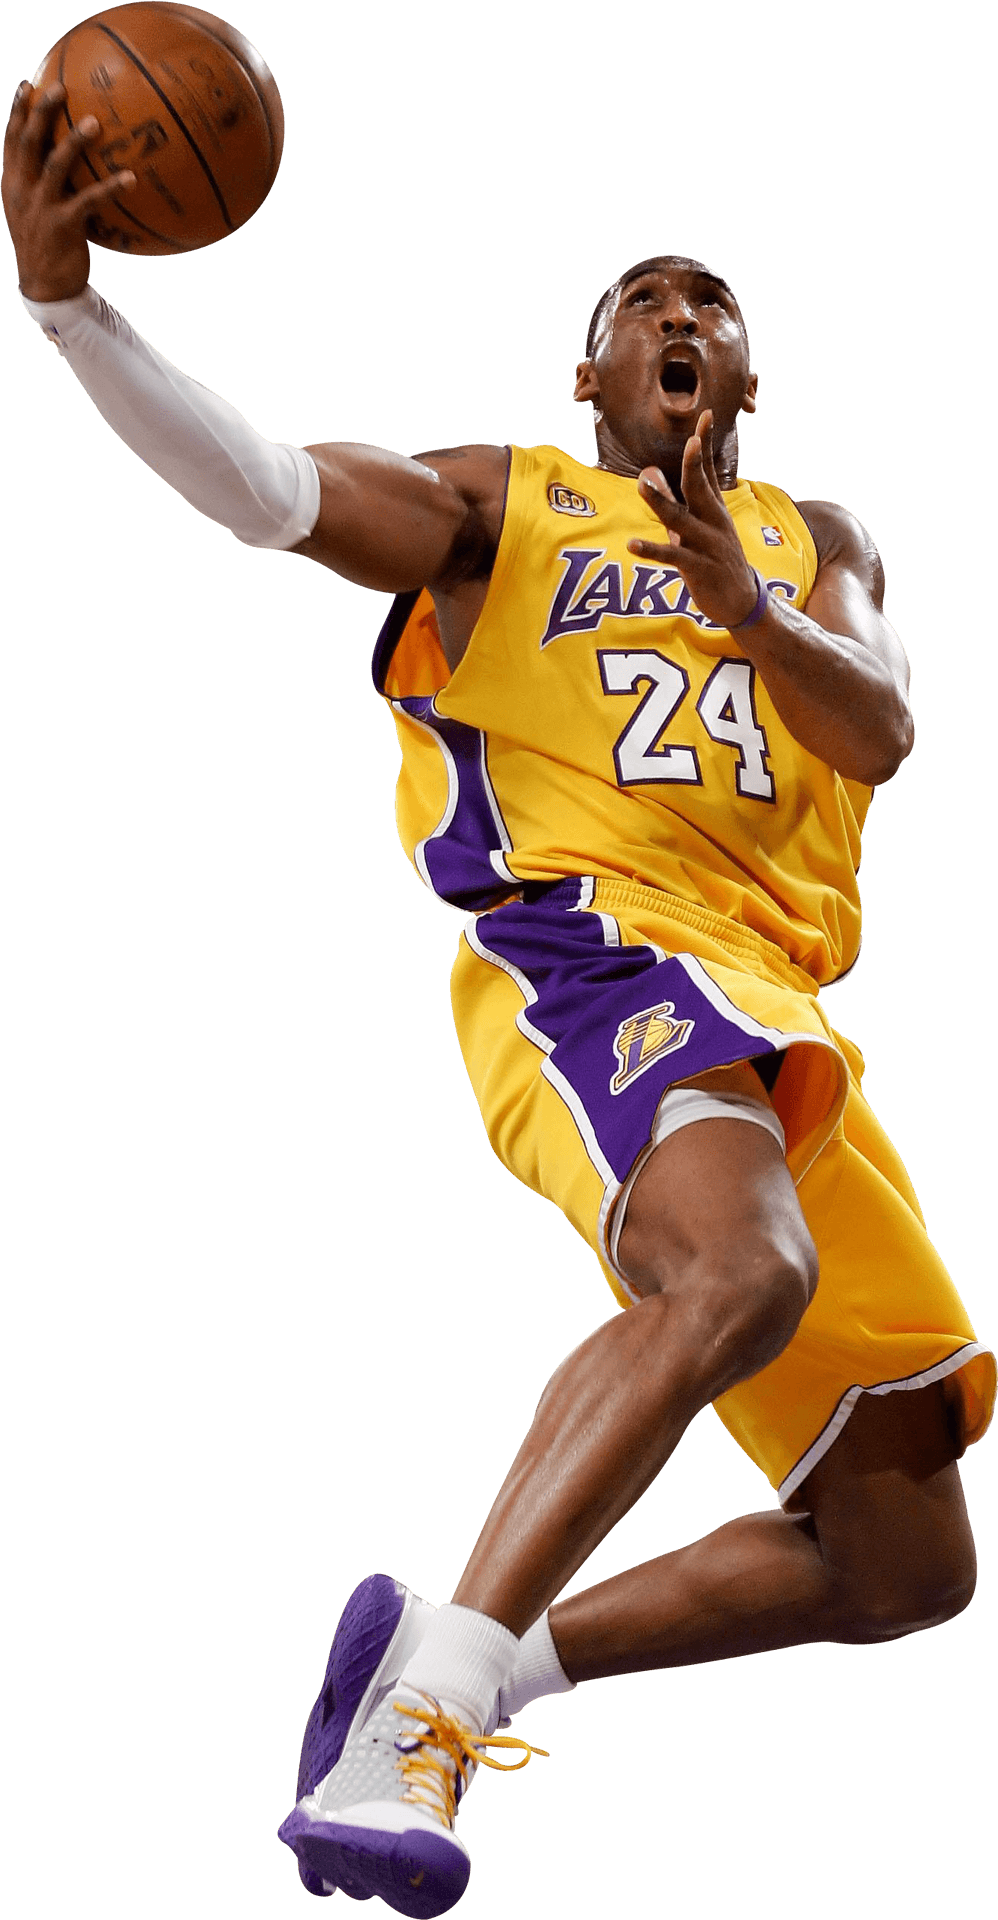 Kobe Bryant Lakers Action Shot PNG image